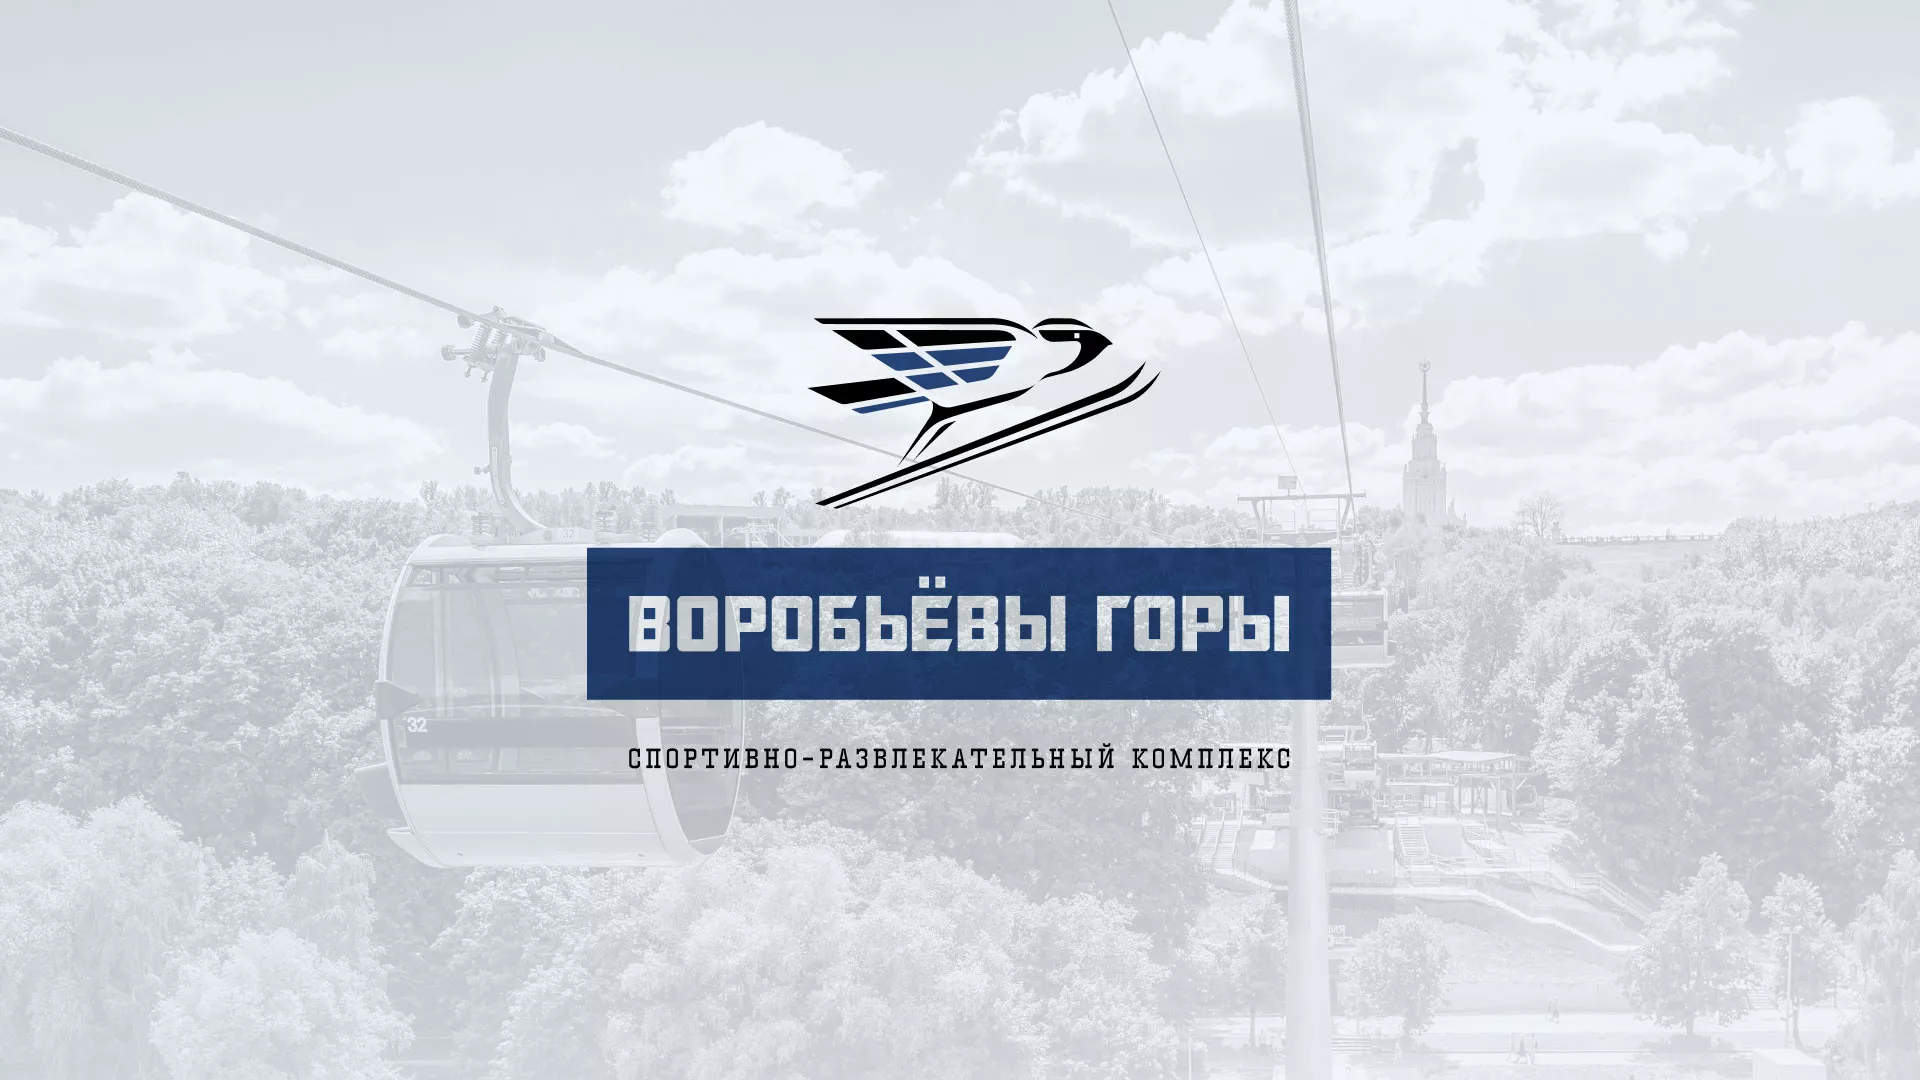 Разработка сайта в Заволжье для спортивно-развлекательного комплекса «Воробьёвы горы»